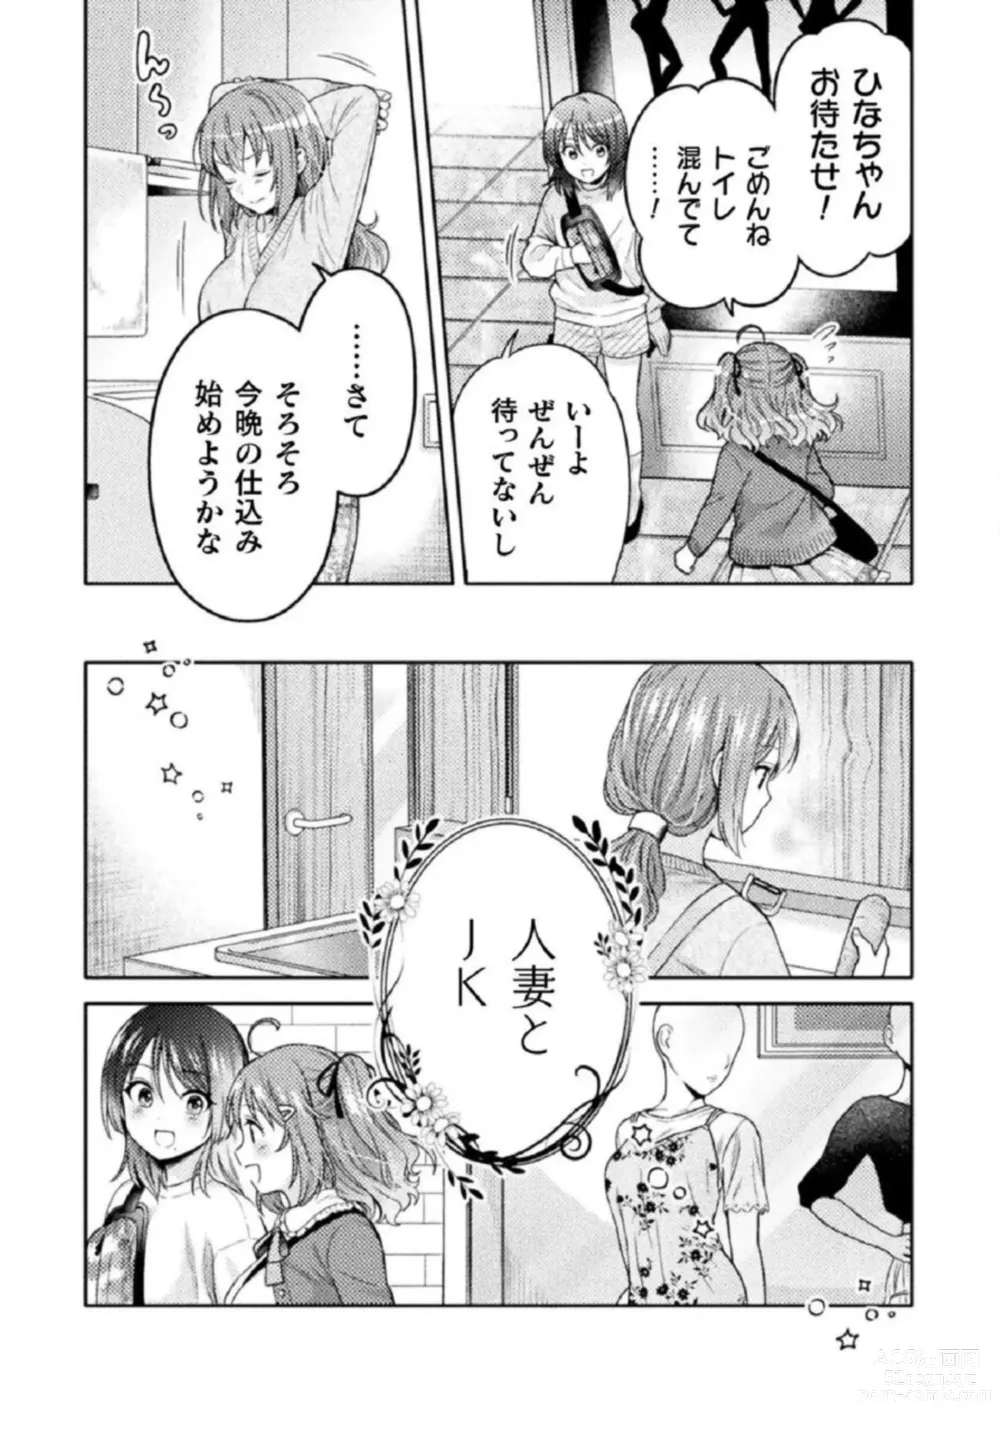 Page 25 of manga Hitozuma to JK 1